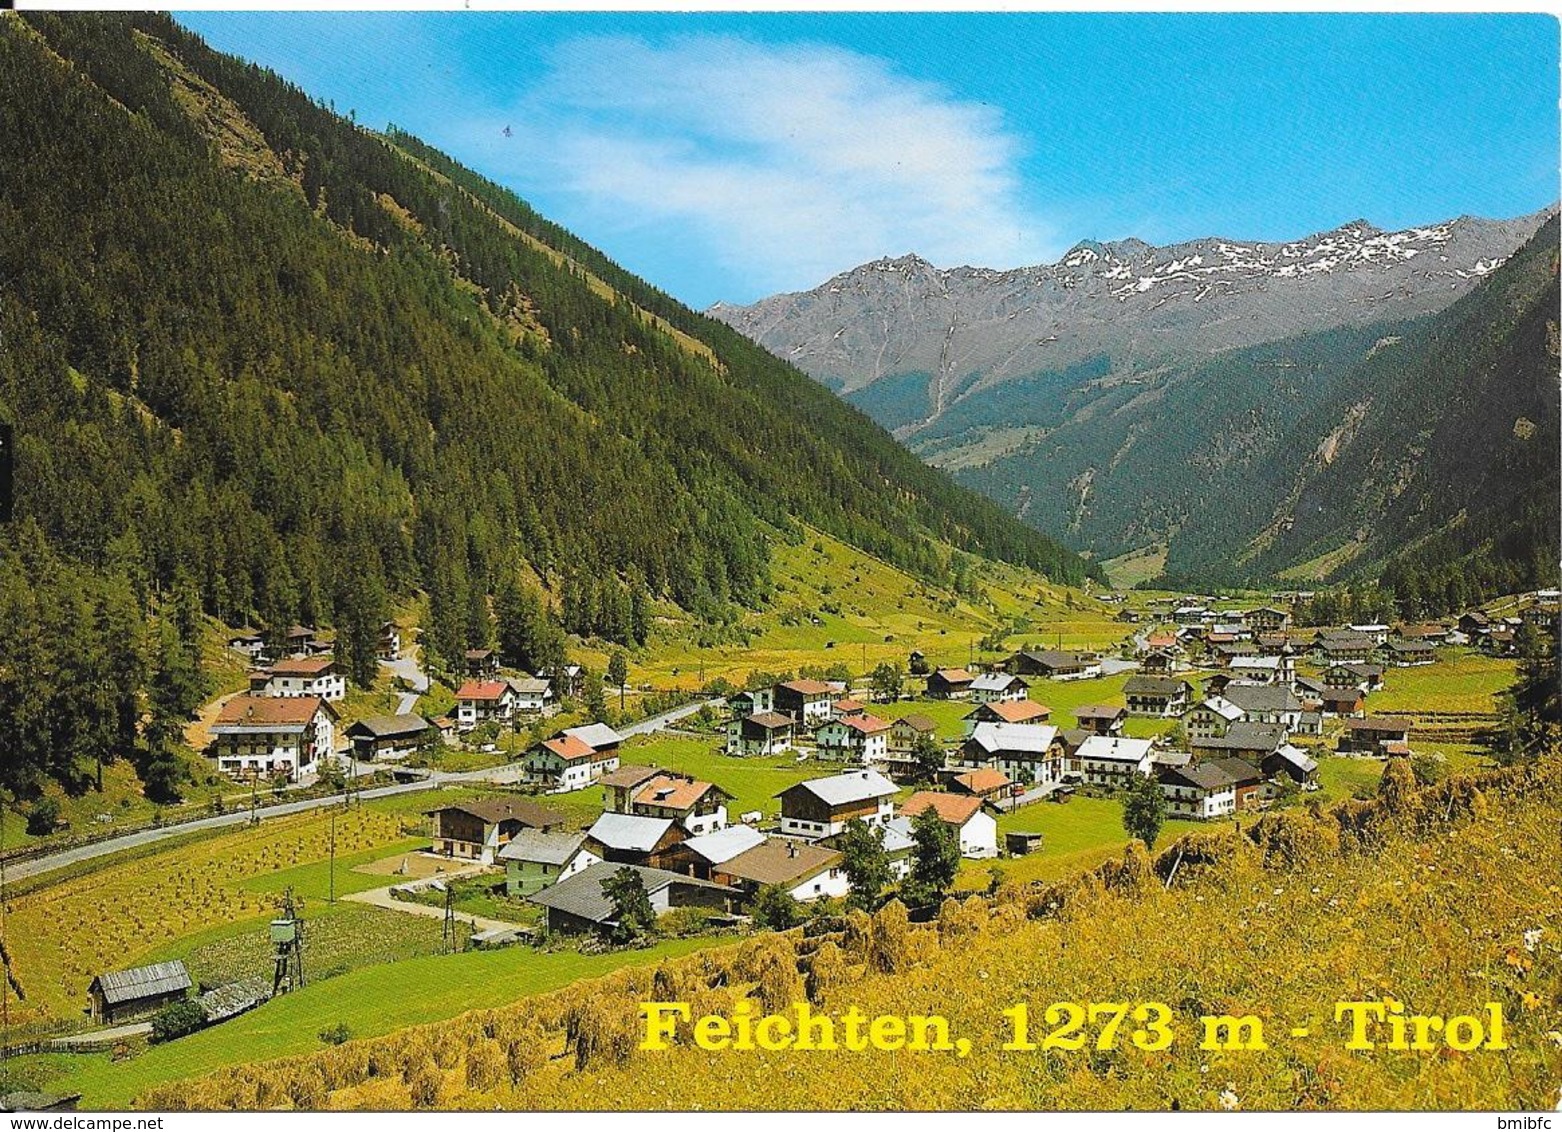 Feichten, 1273m - Tirol - Kaunertal